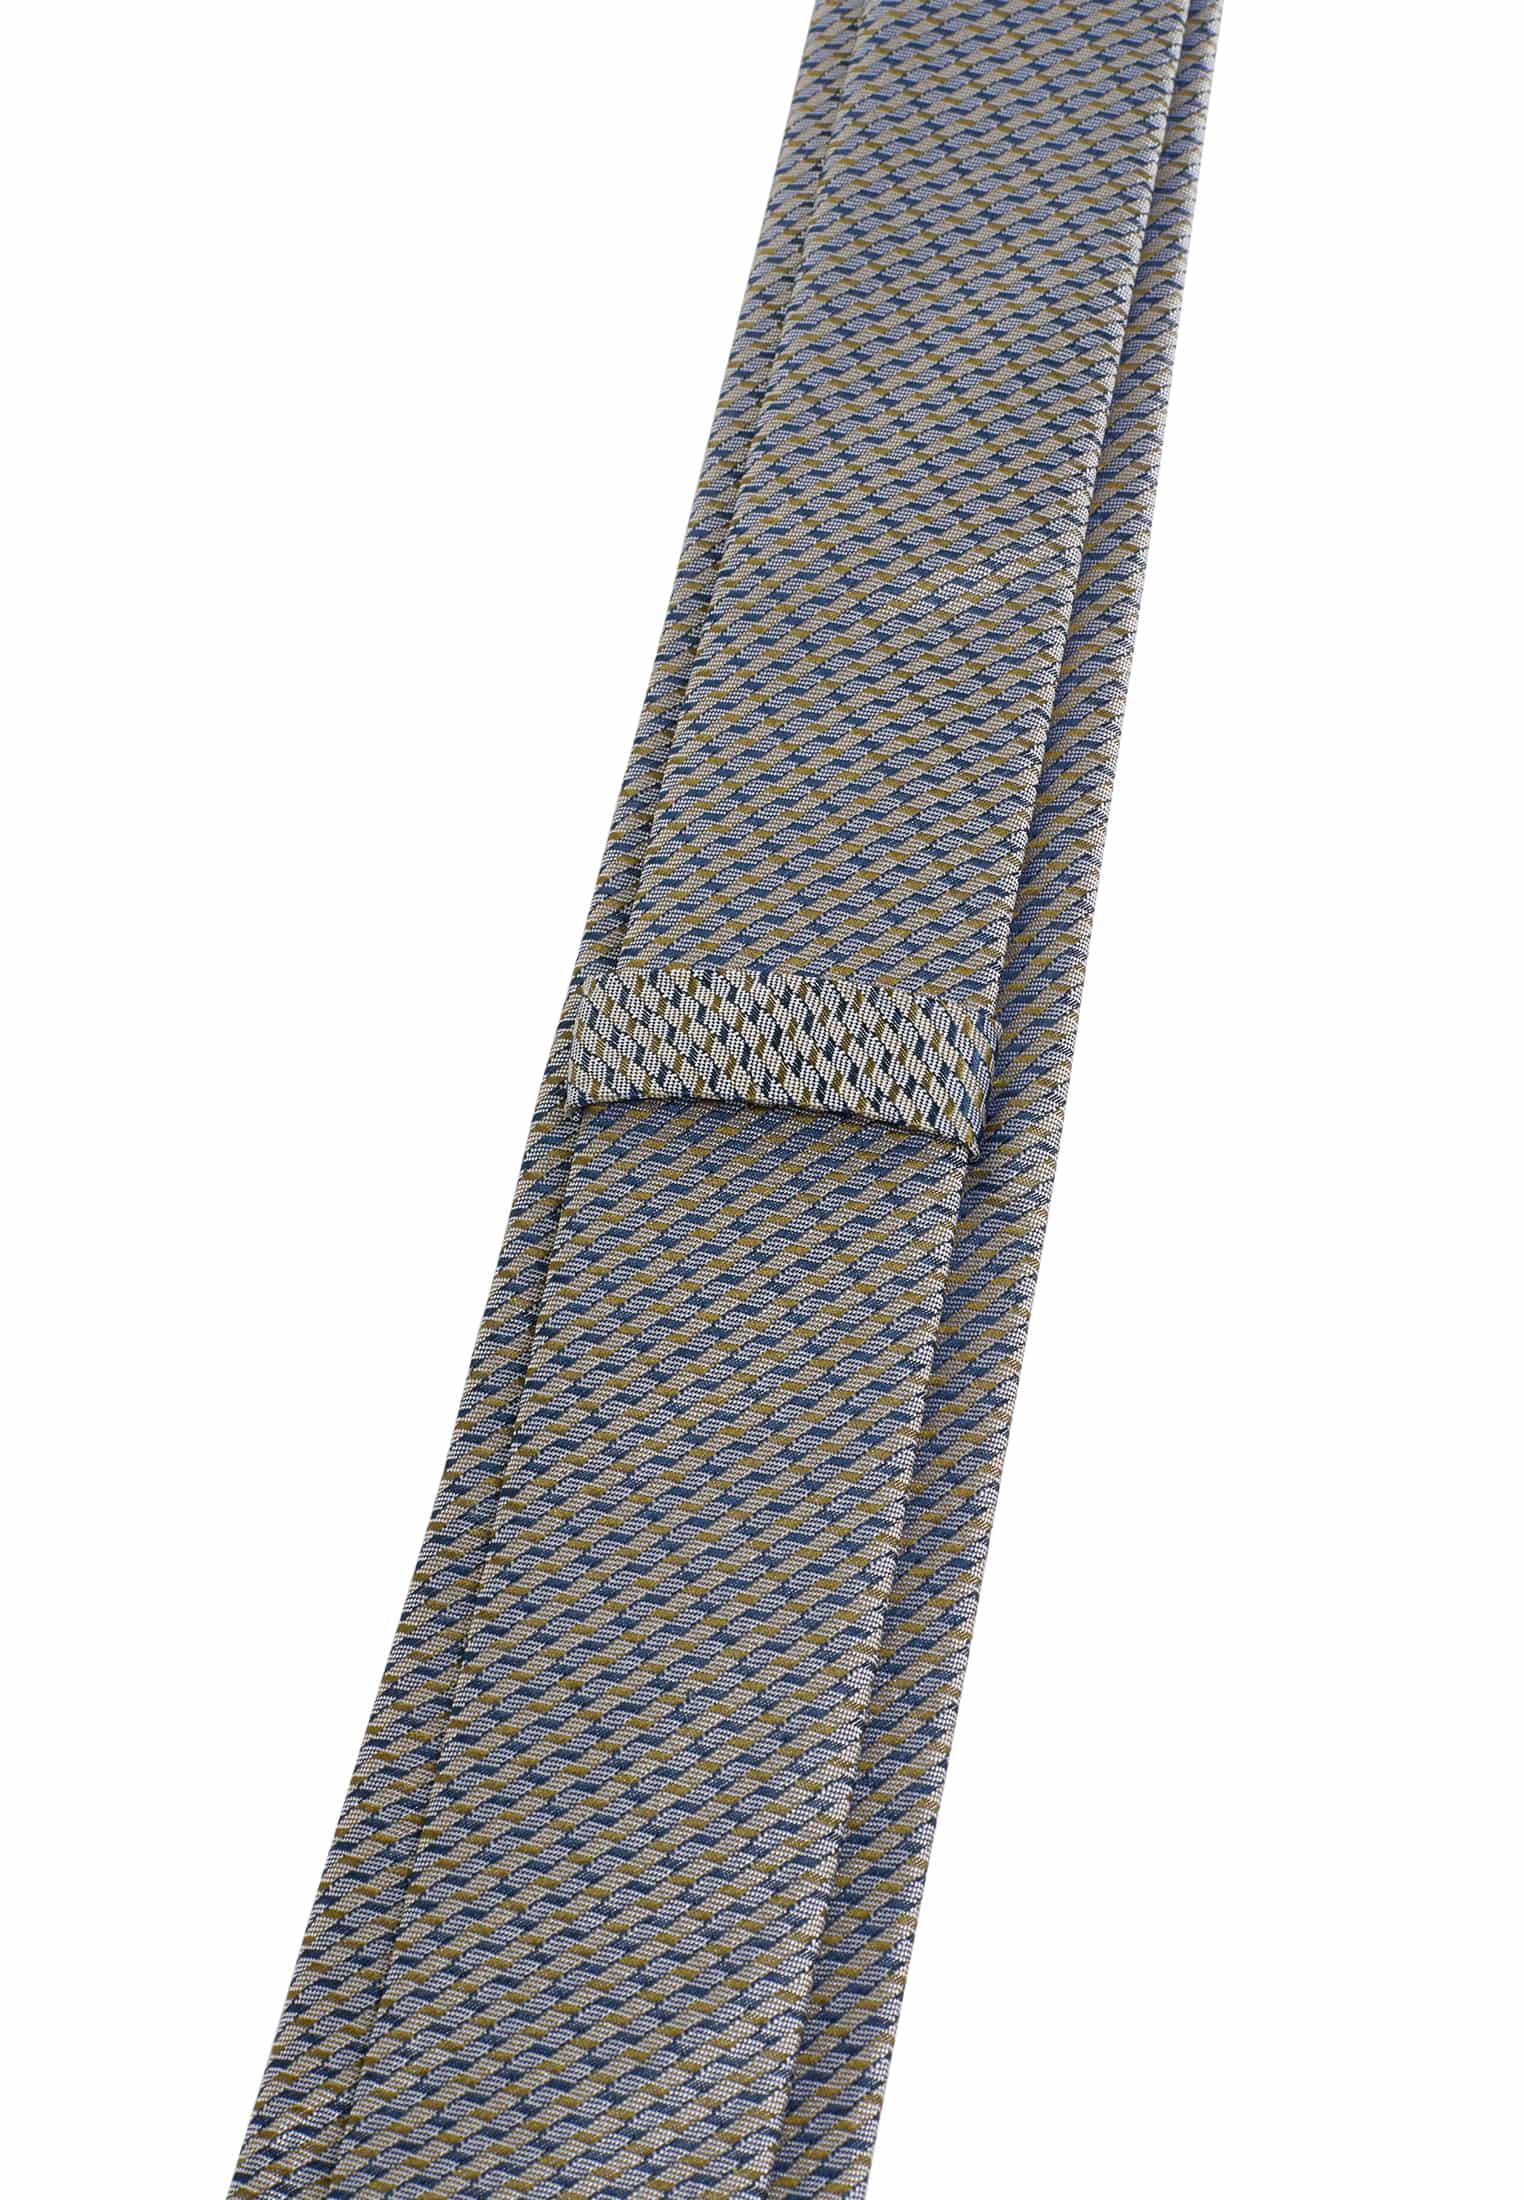 Krawatte in navy/grün | 1AC01951-81-88-142 | navy/grün | strukturiert 142